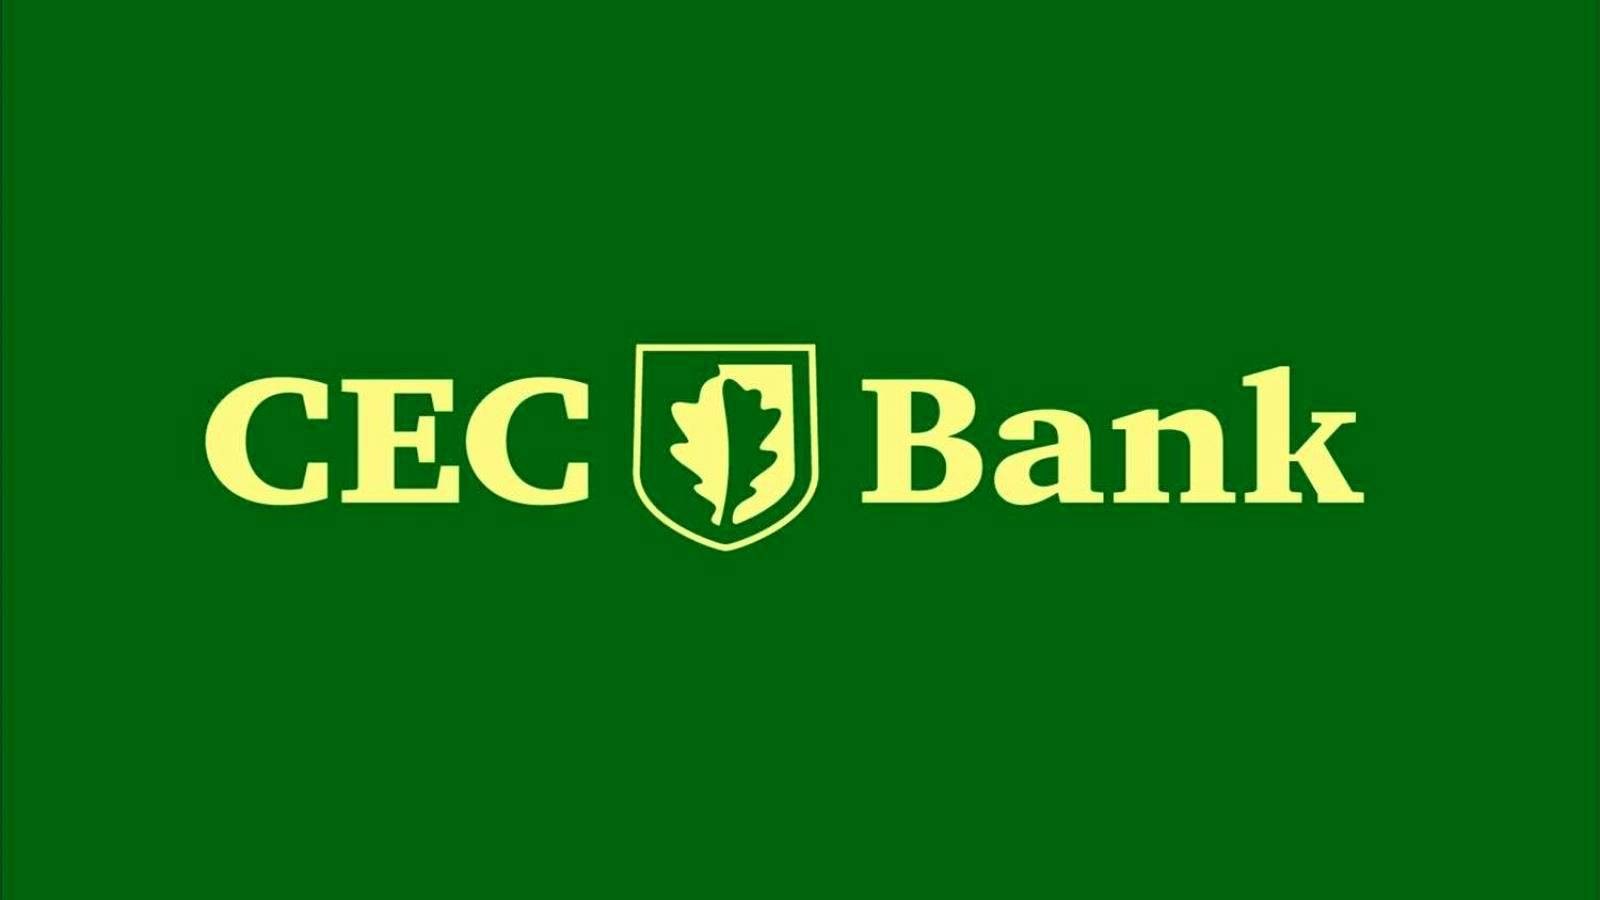 Advertencia URGENTE del Banco CEC a todos los clientes rumanos